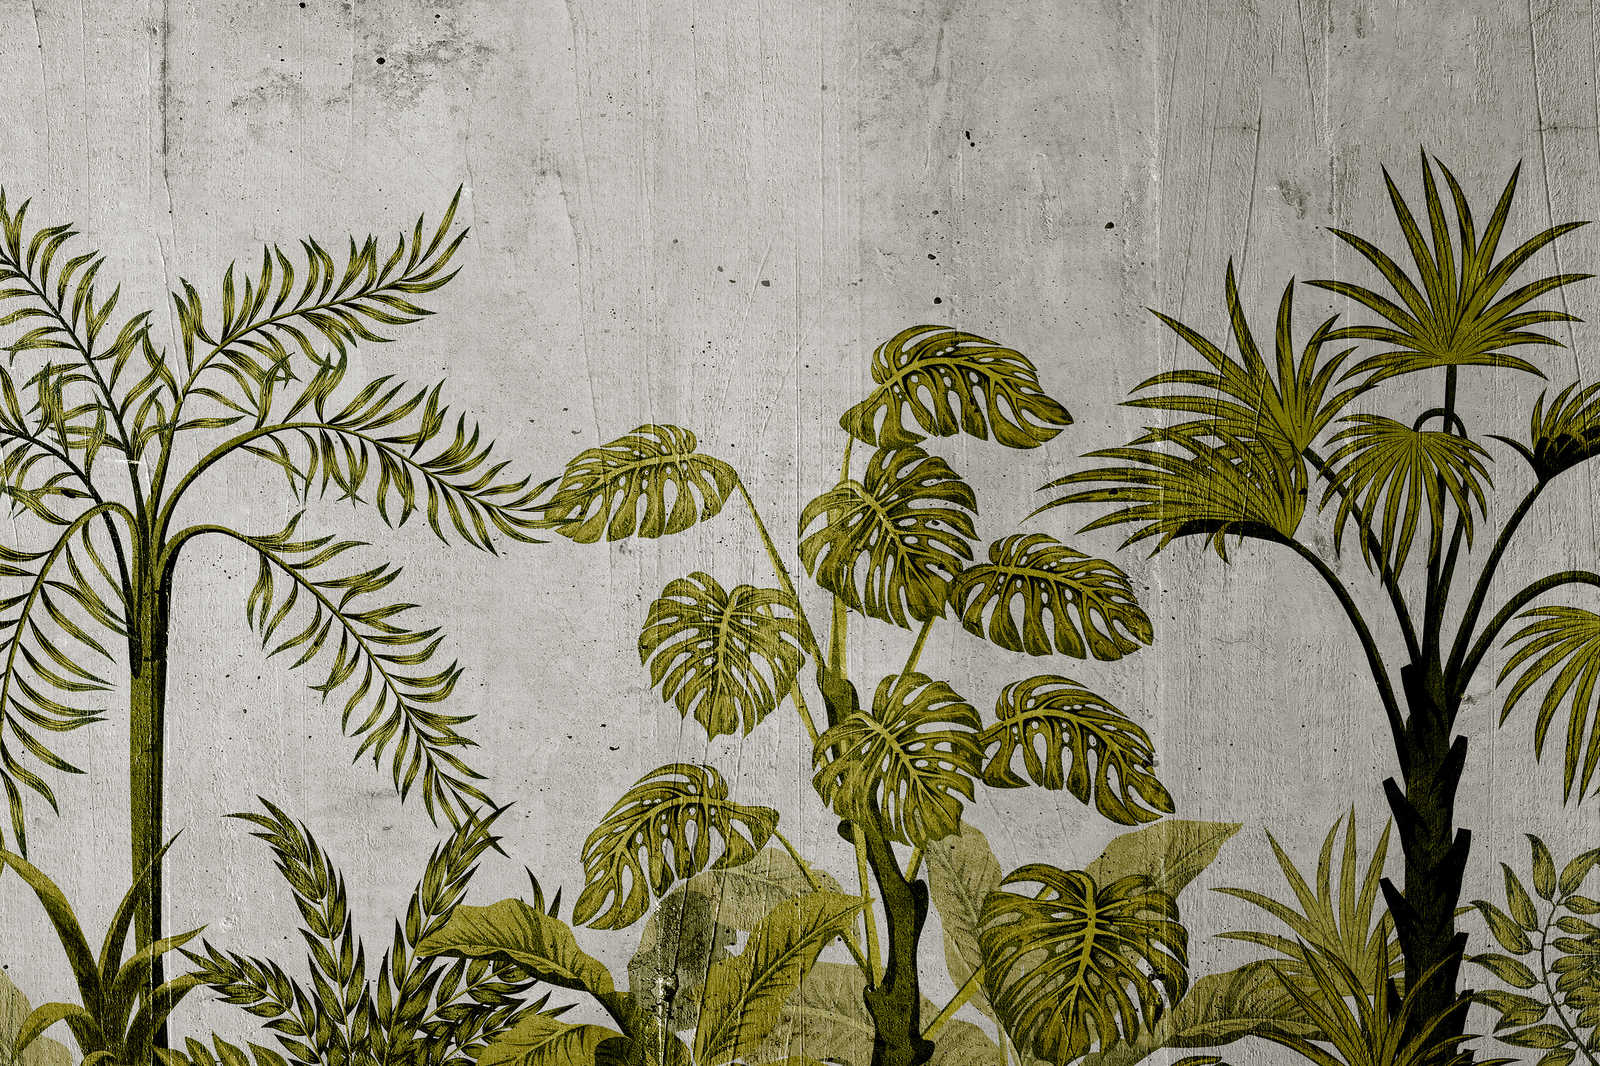             Leinwandbild mit Dschungelmotiv auf Beton Hintergrund – 0,90 m x 0,60 m
        